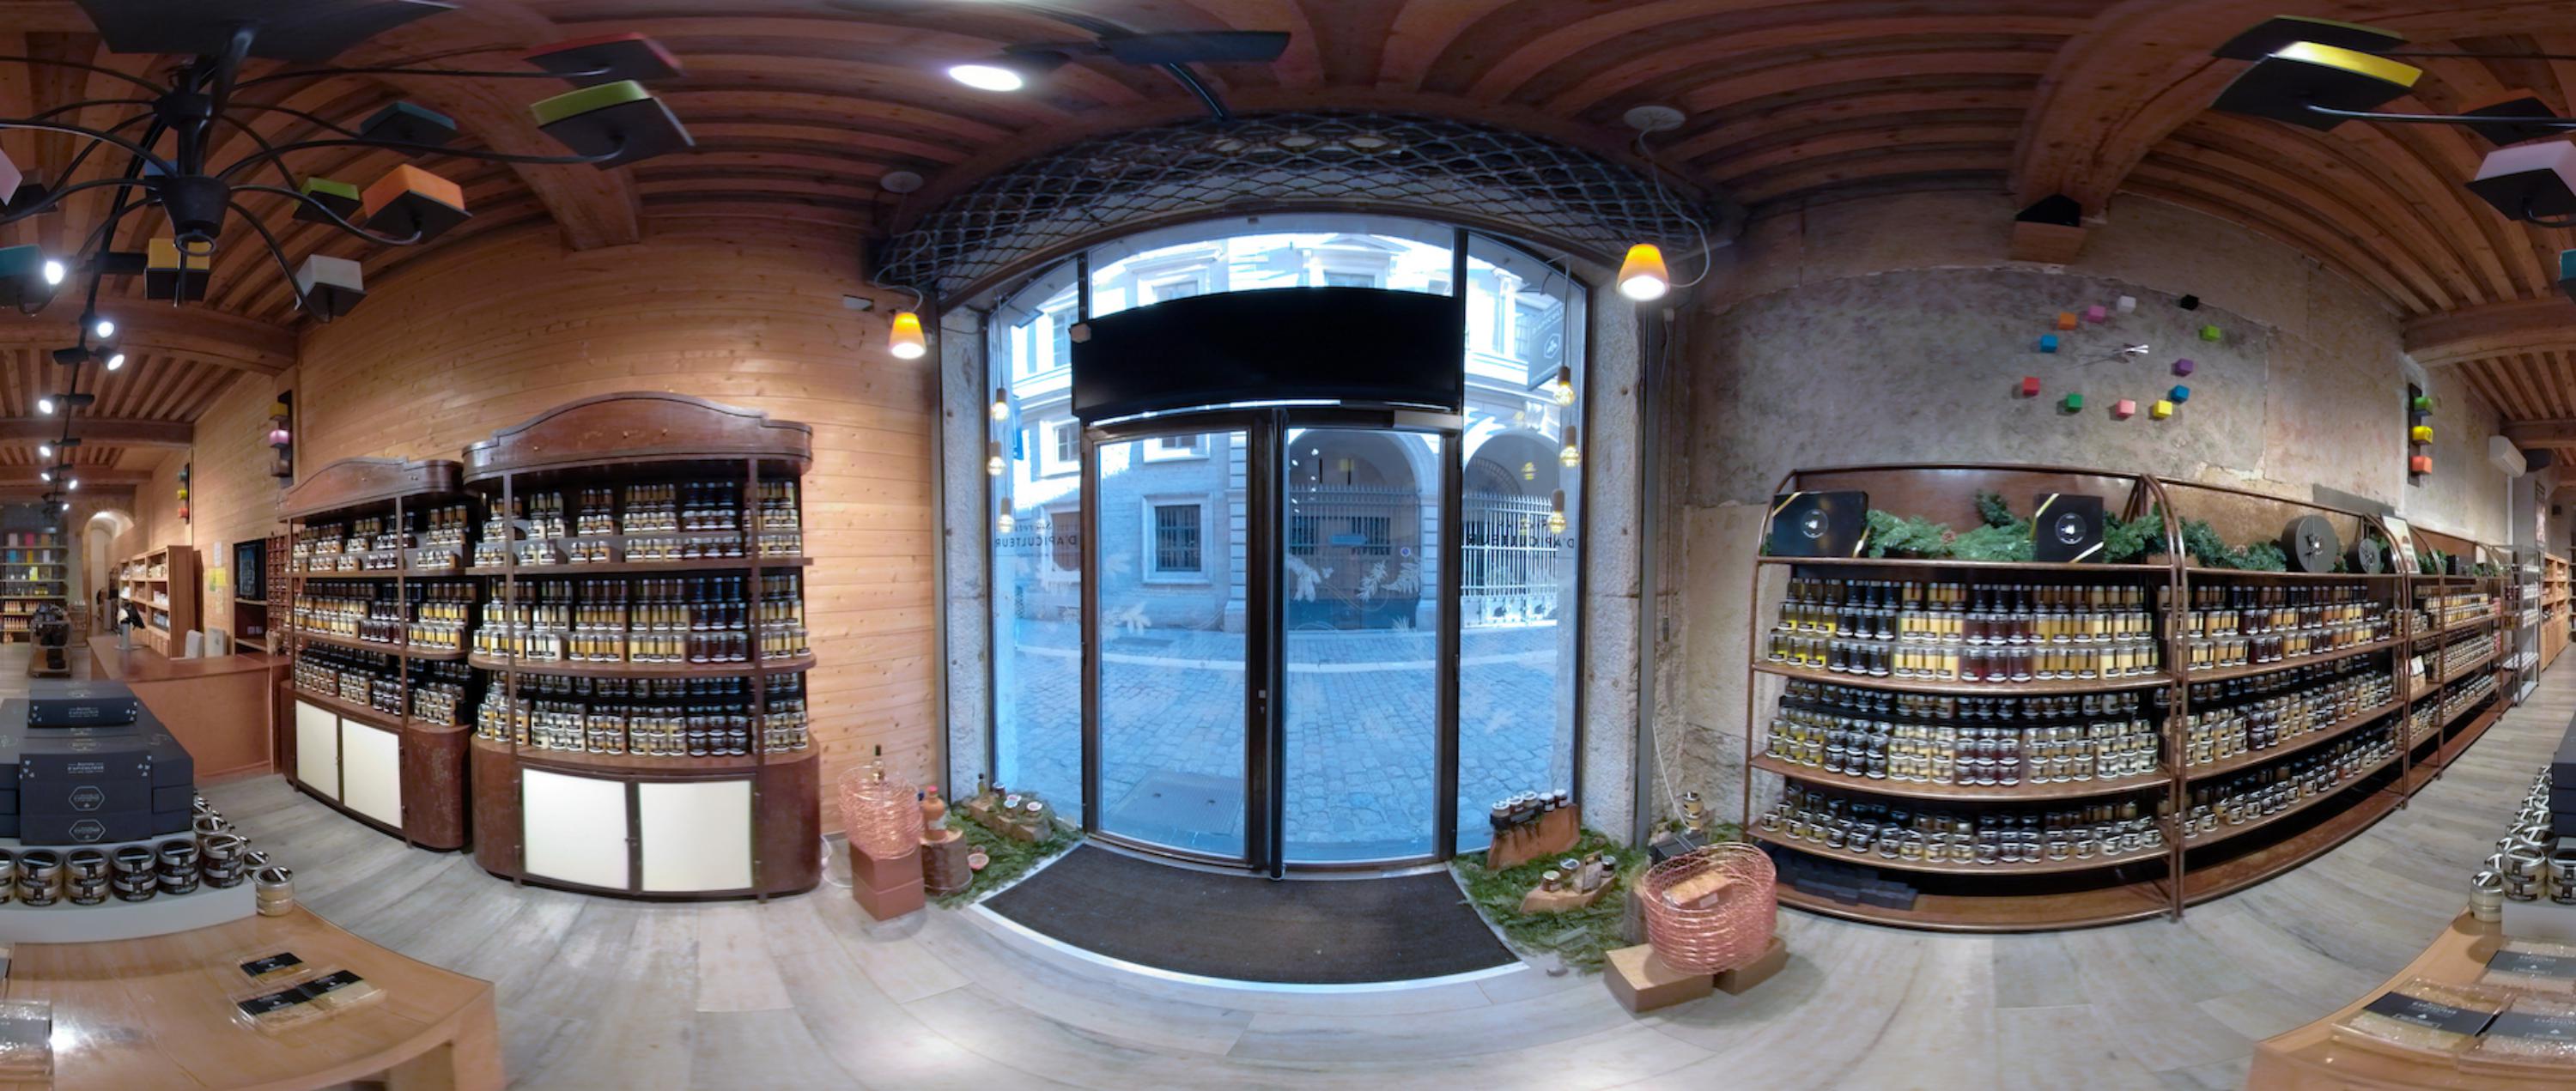 L'épicerie Secretsdapiculteur rue Saint-Jean dans le Vieux-Lyon